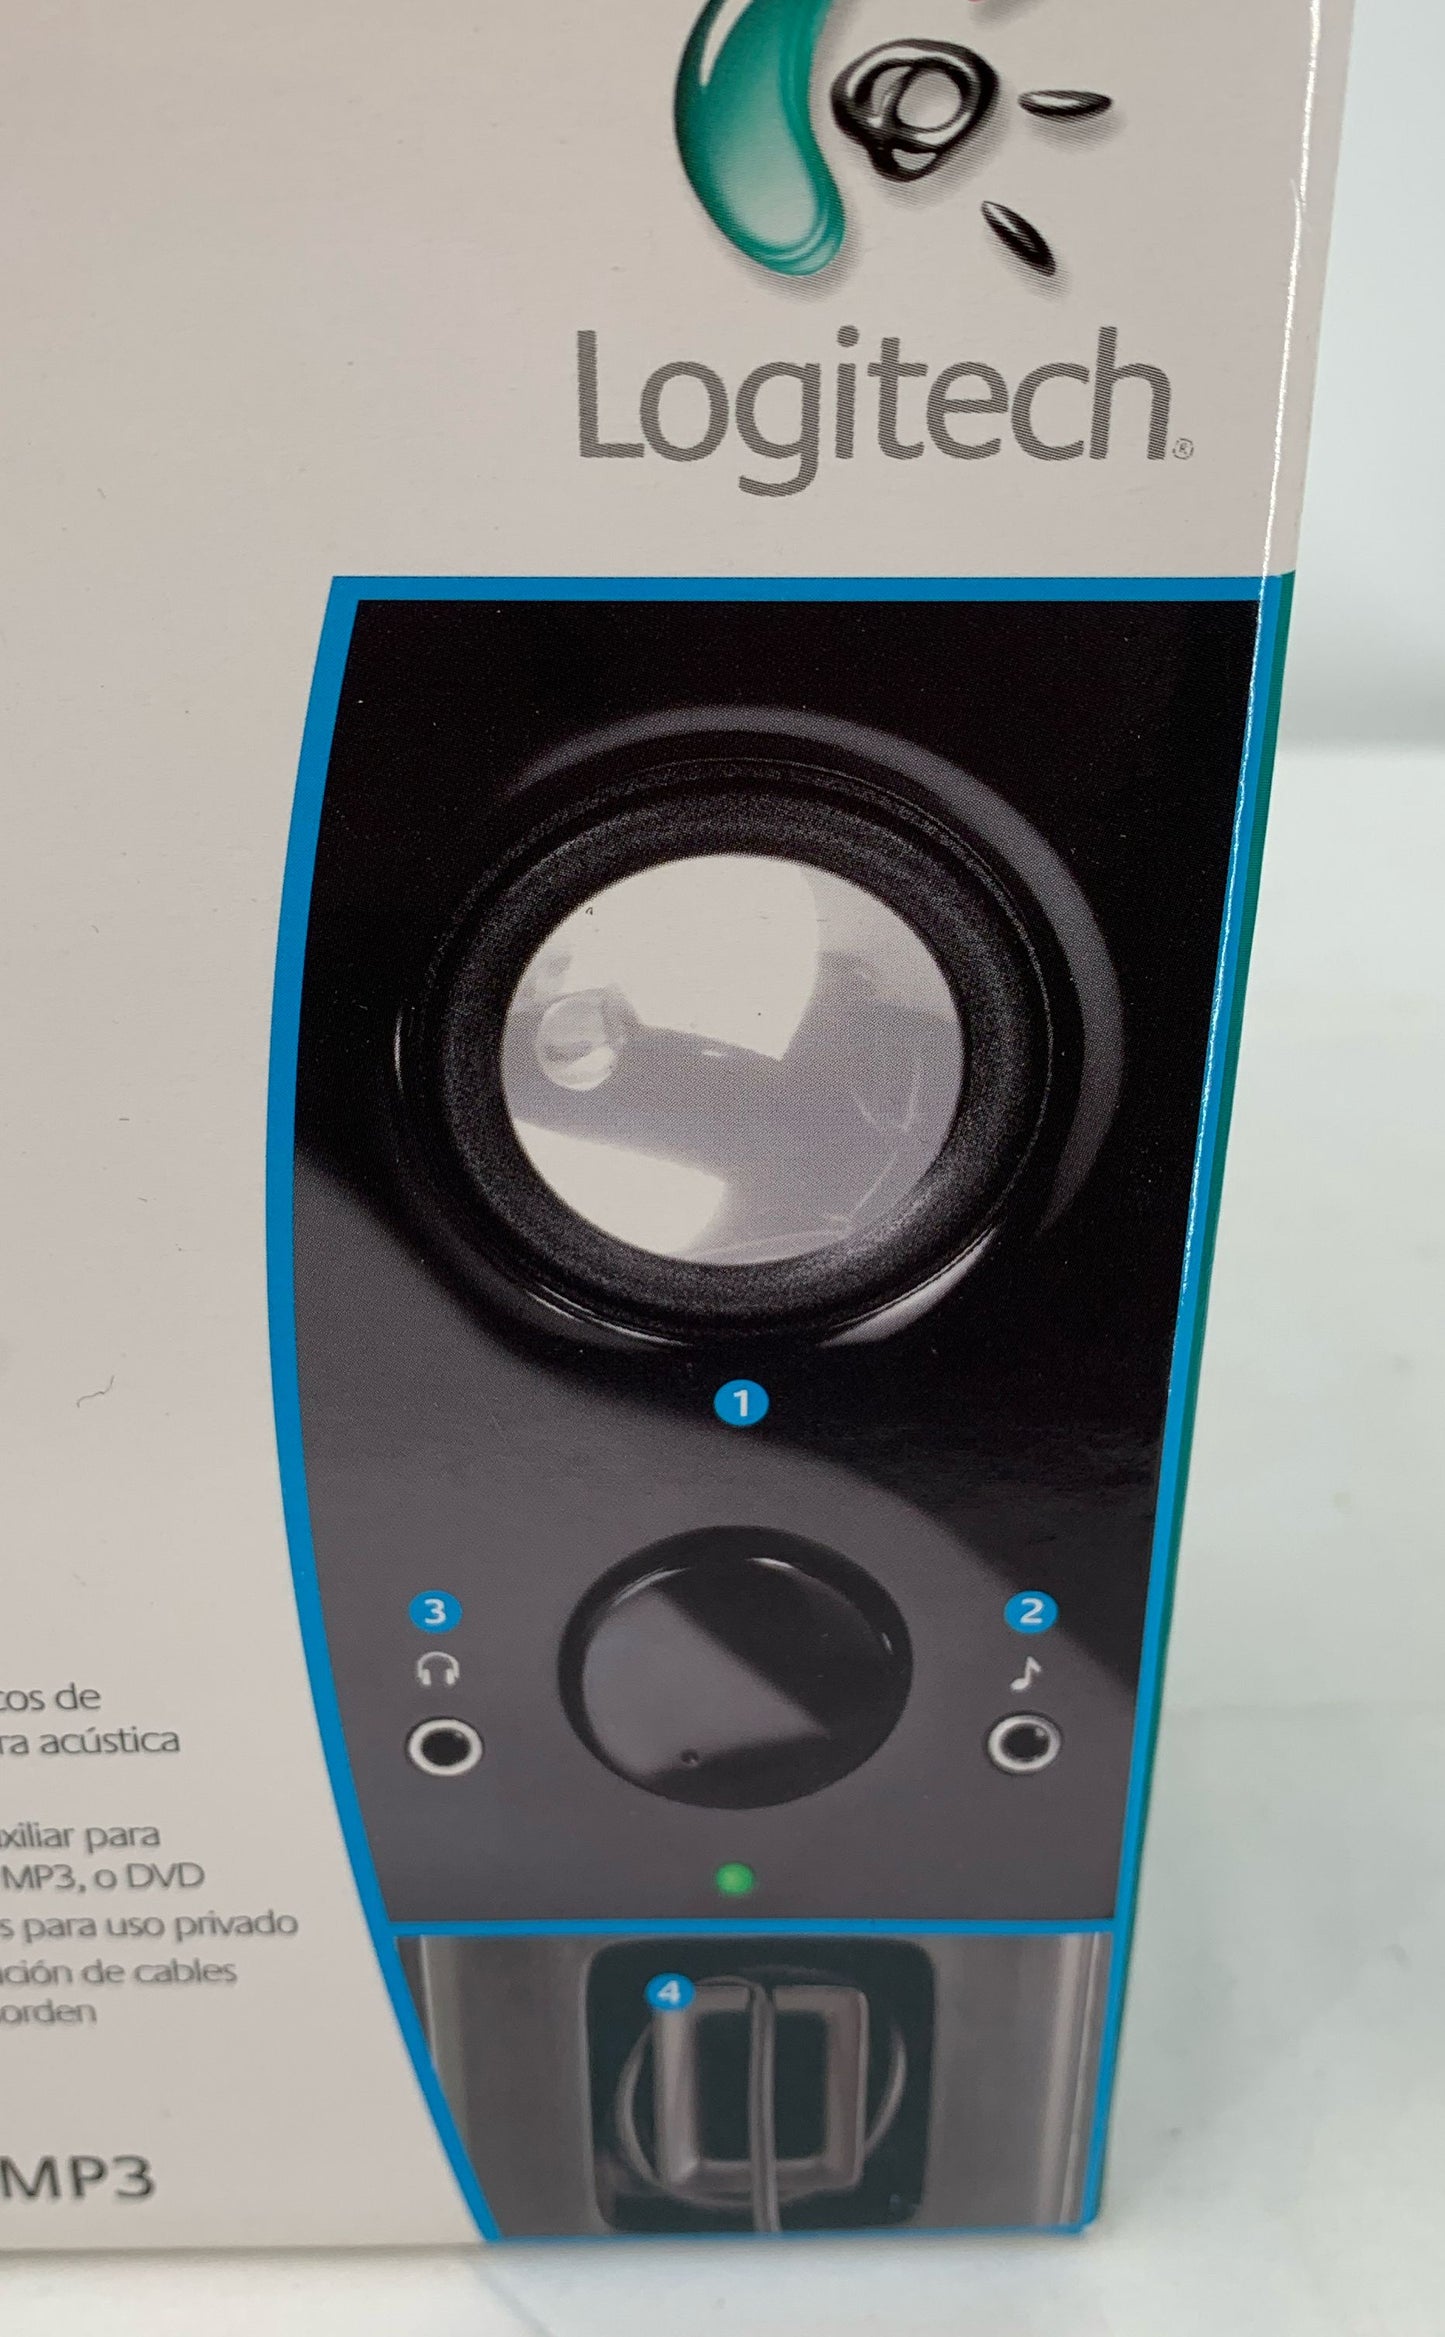 Logitech New LS11 2.0 Stereo Speaker System PC CD MP3 3.5 mm Jack MP3, CD, DVD